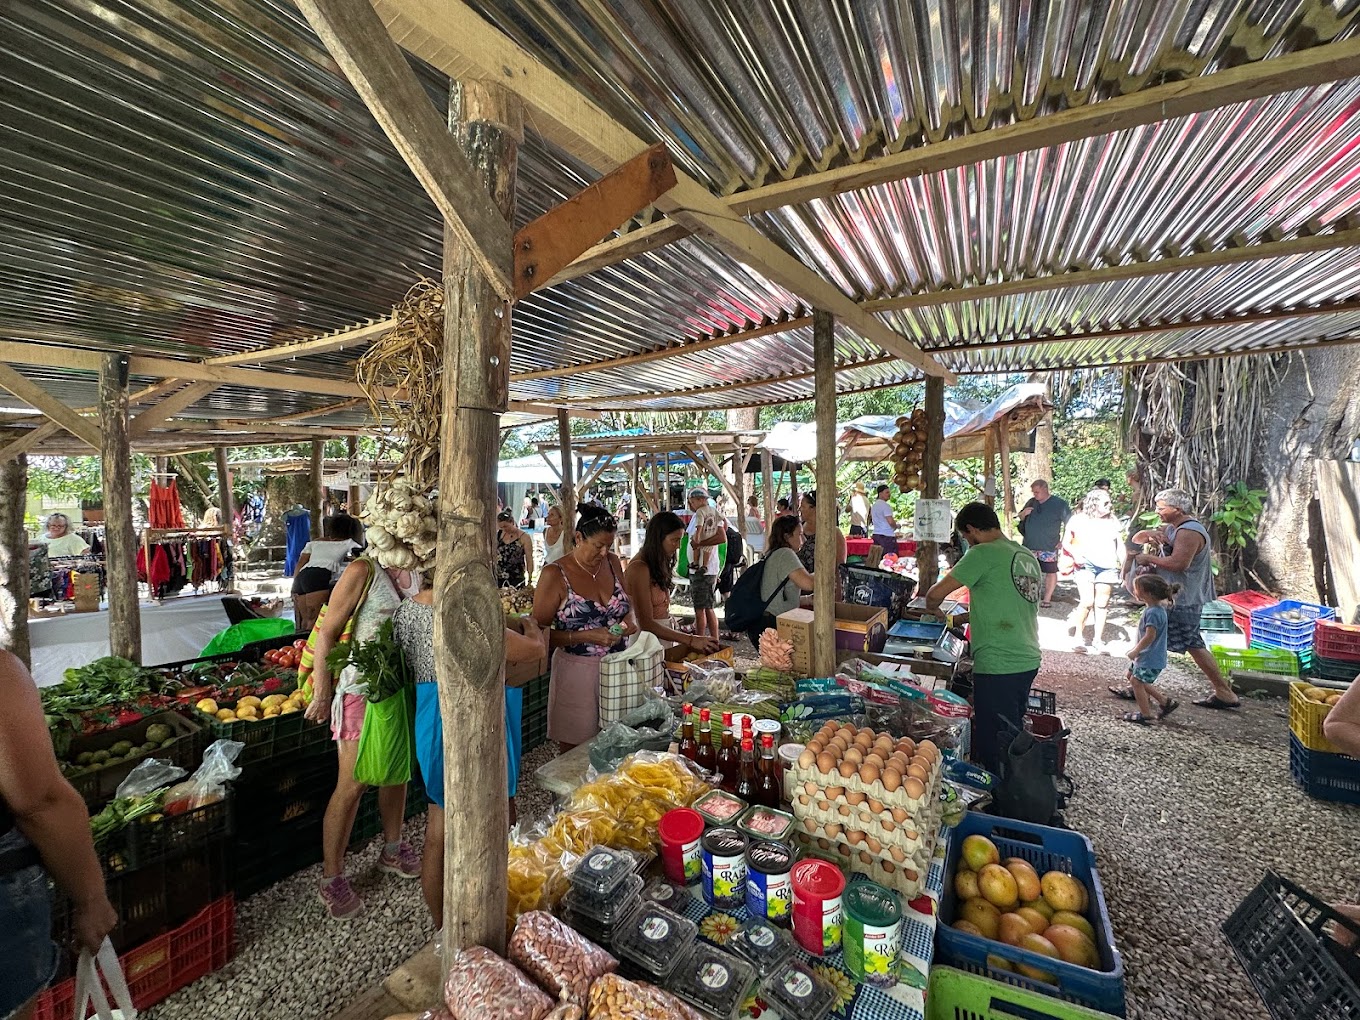 Samara Wochenmarkt